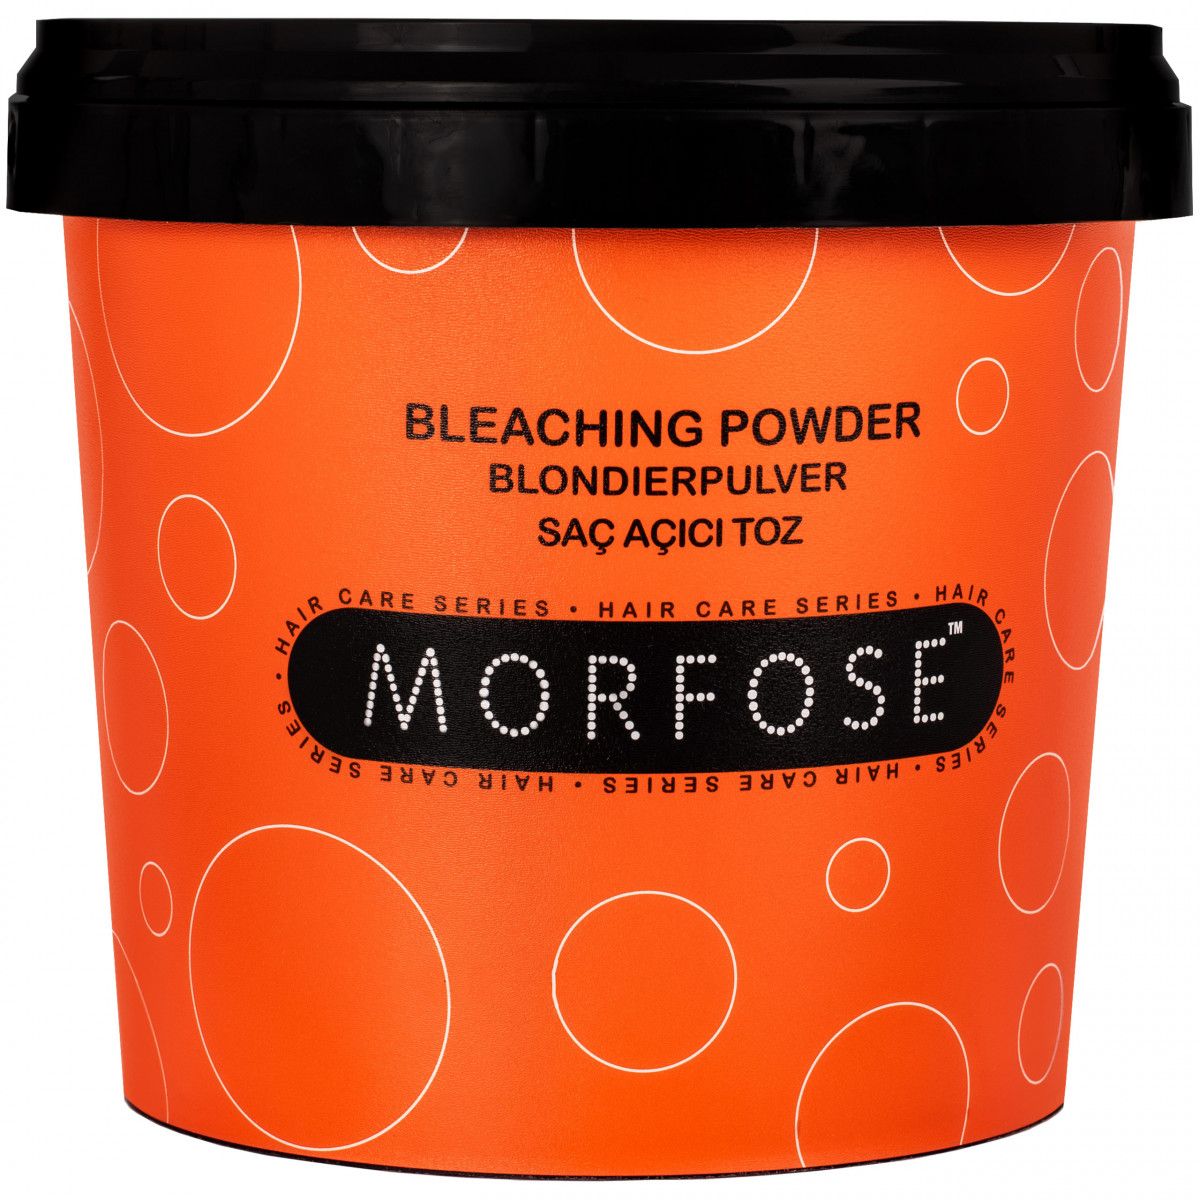 Morfose Bleaching Powder Blue – rozjaśniacz do włosów w proszku, 1000ml